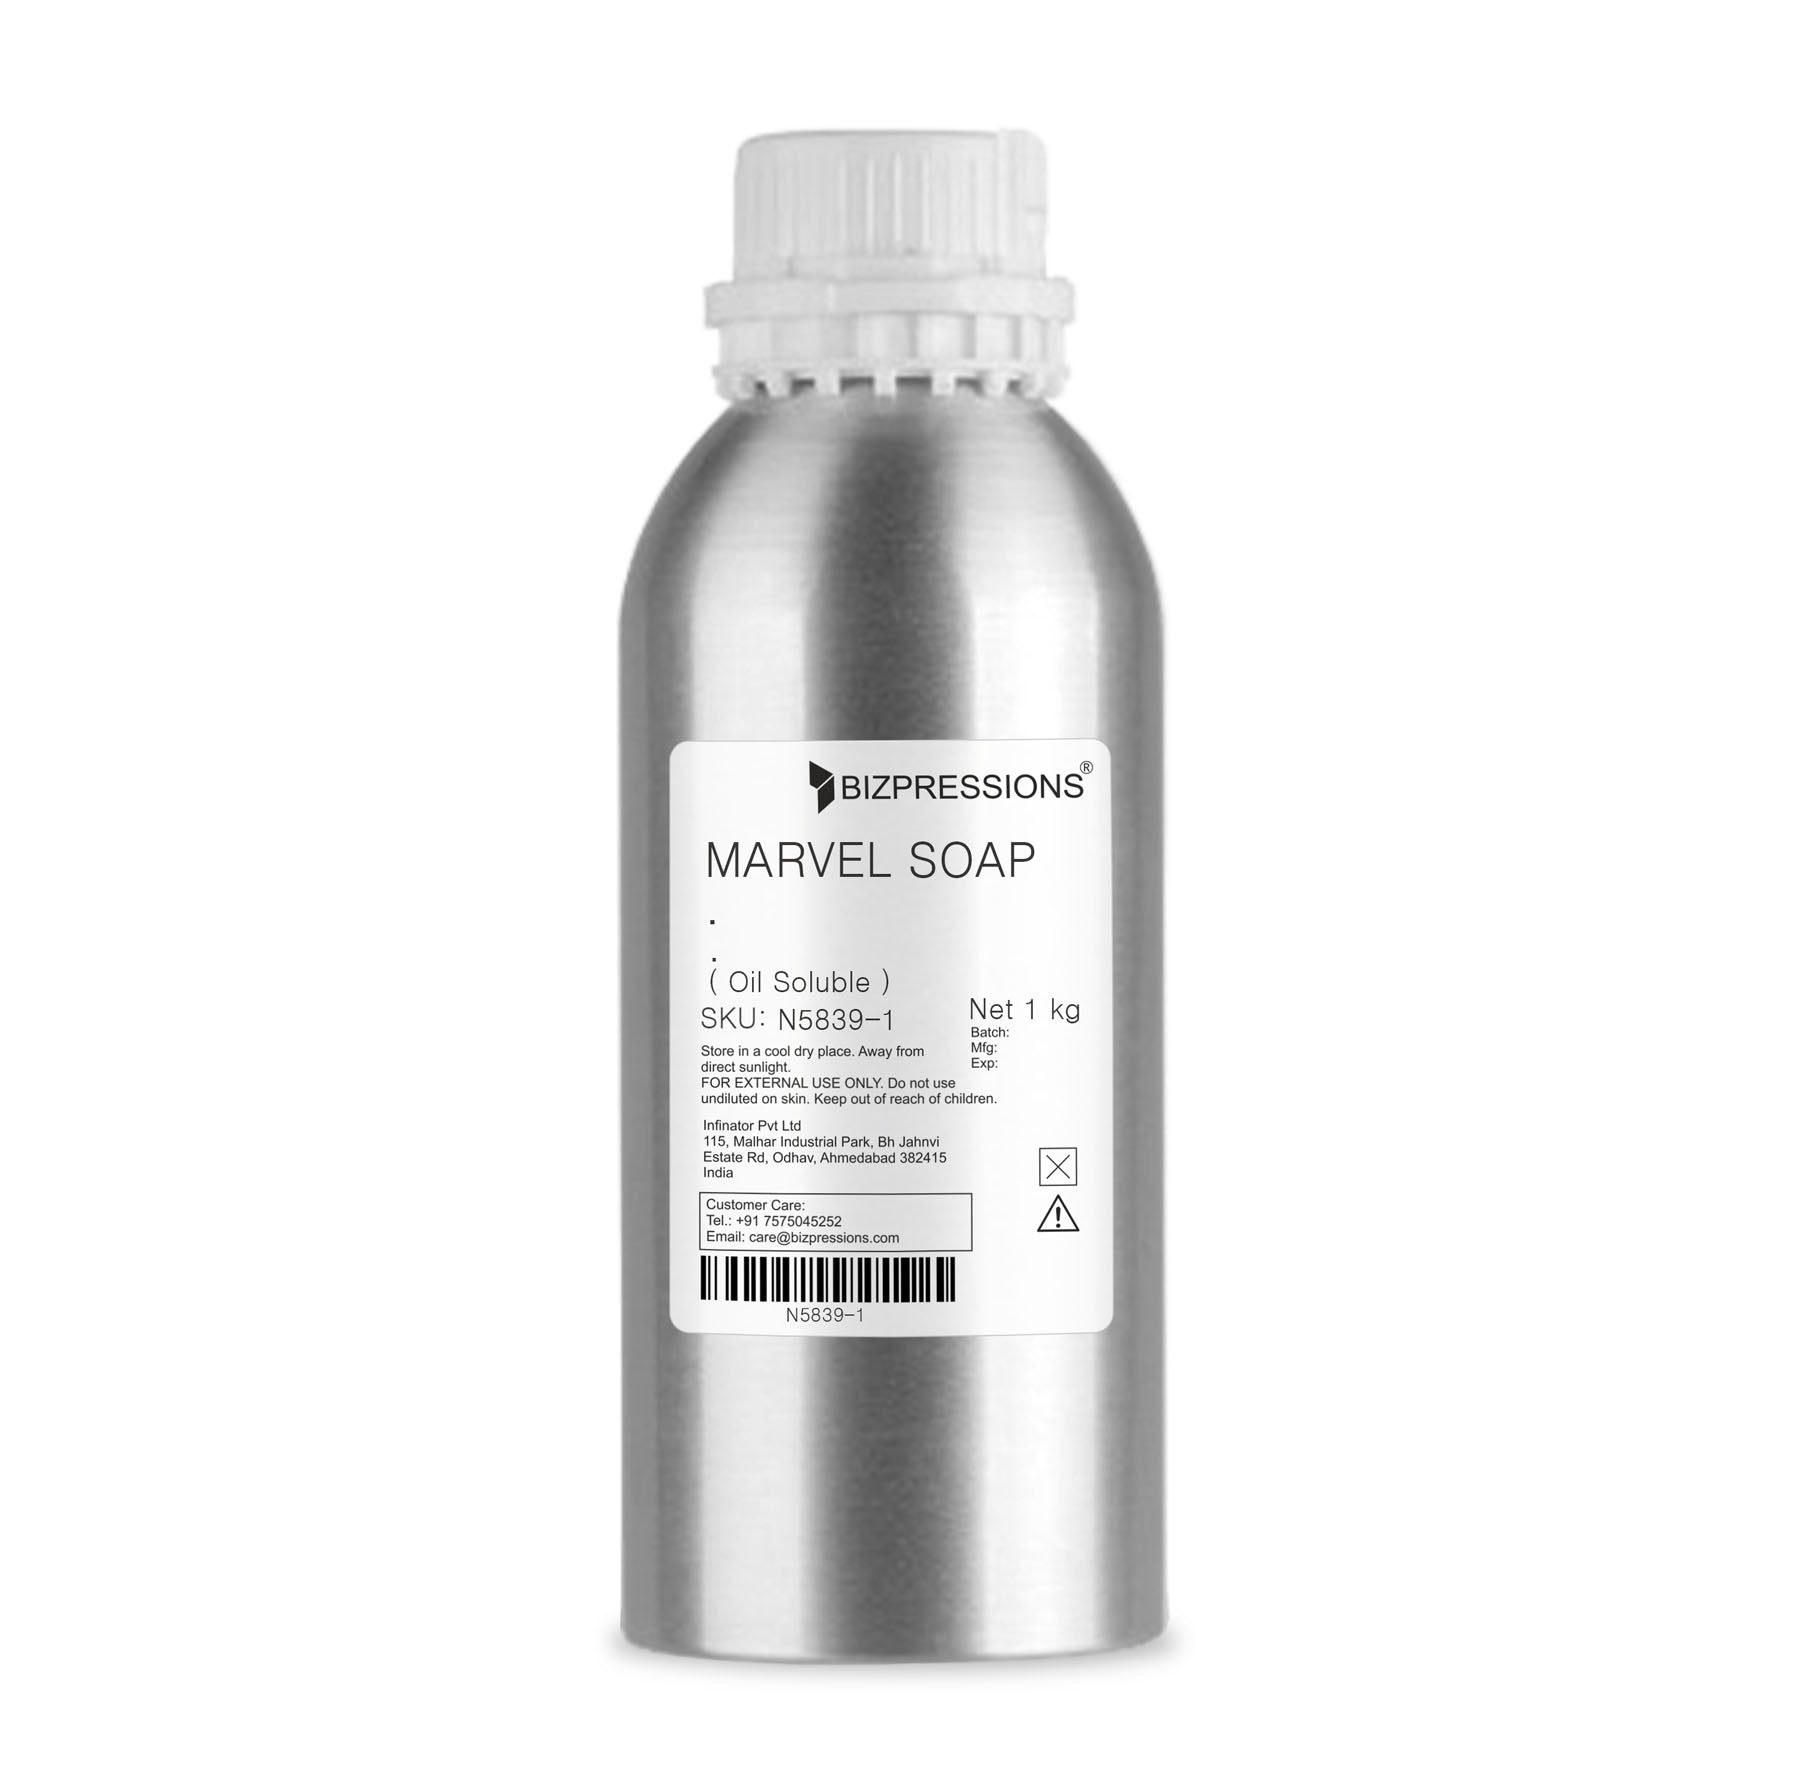 MARVEL SOAP - Fragrance ( Oil Soluble ) - 1 kg